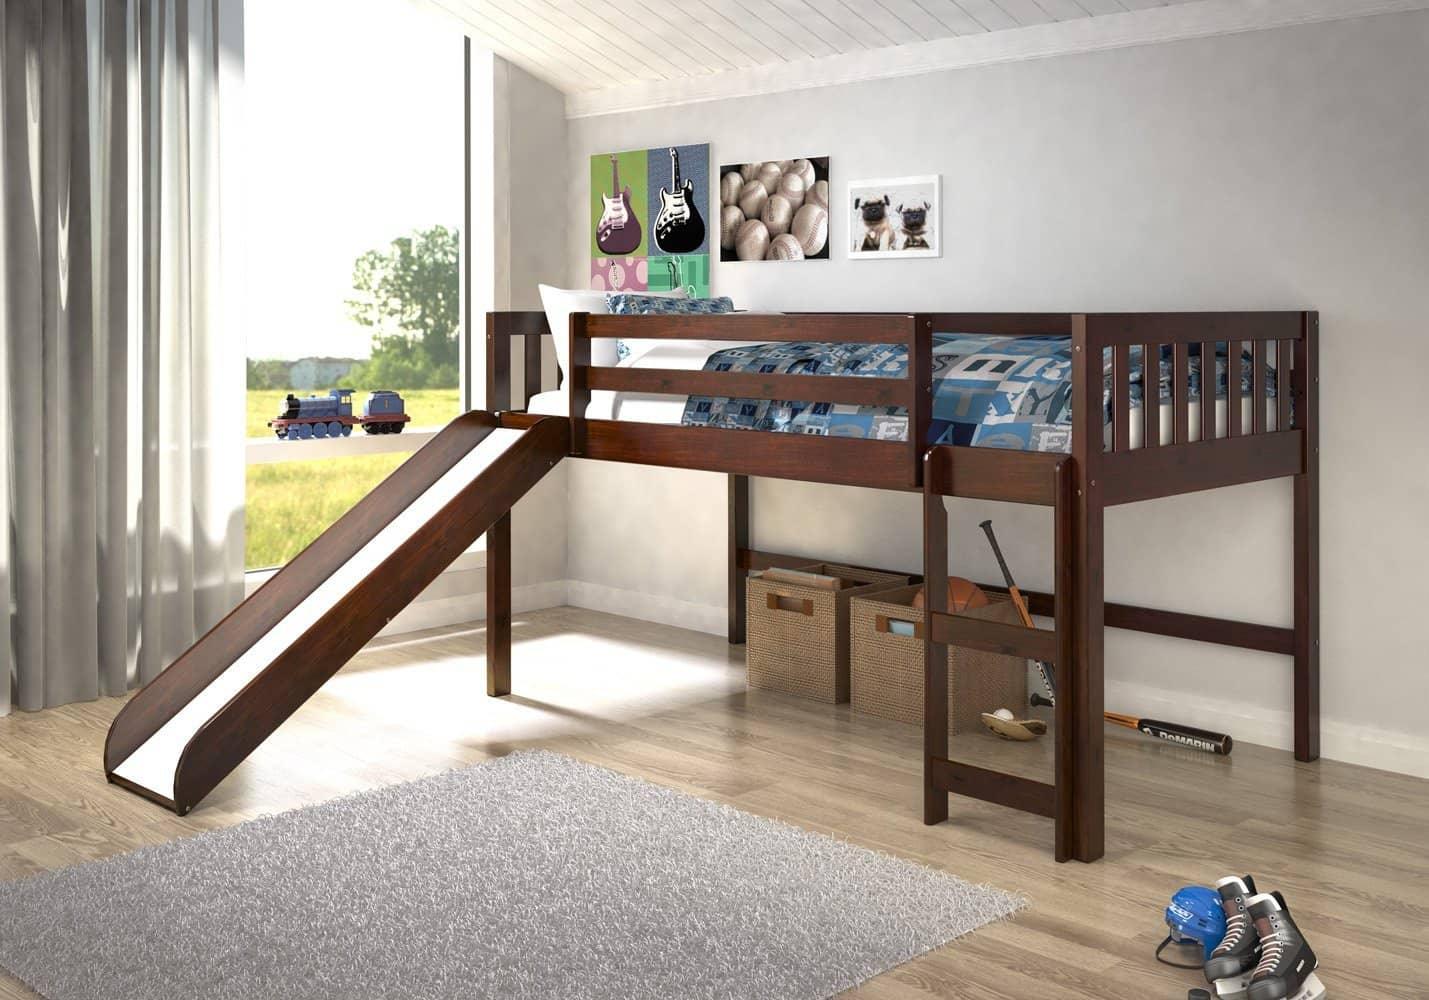 Bunk Bed With Slide For Sale Online 🛏 | Custom Kids Furniture